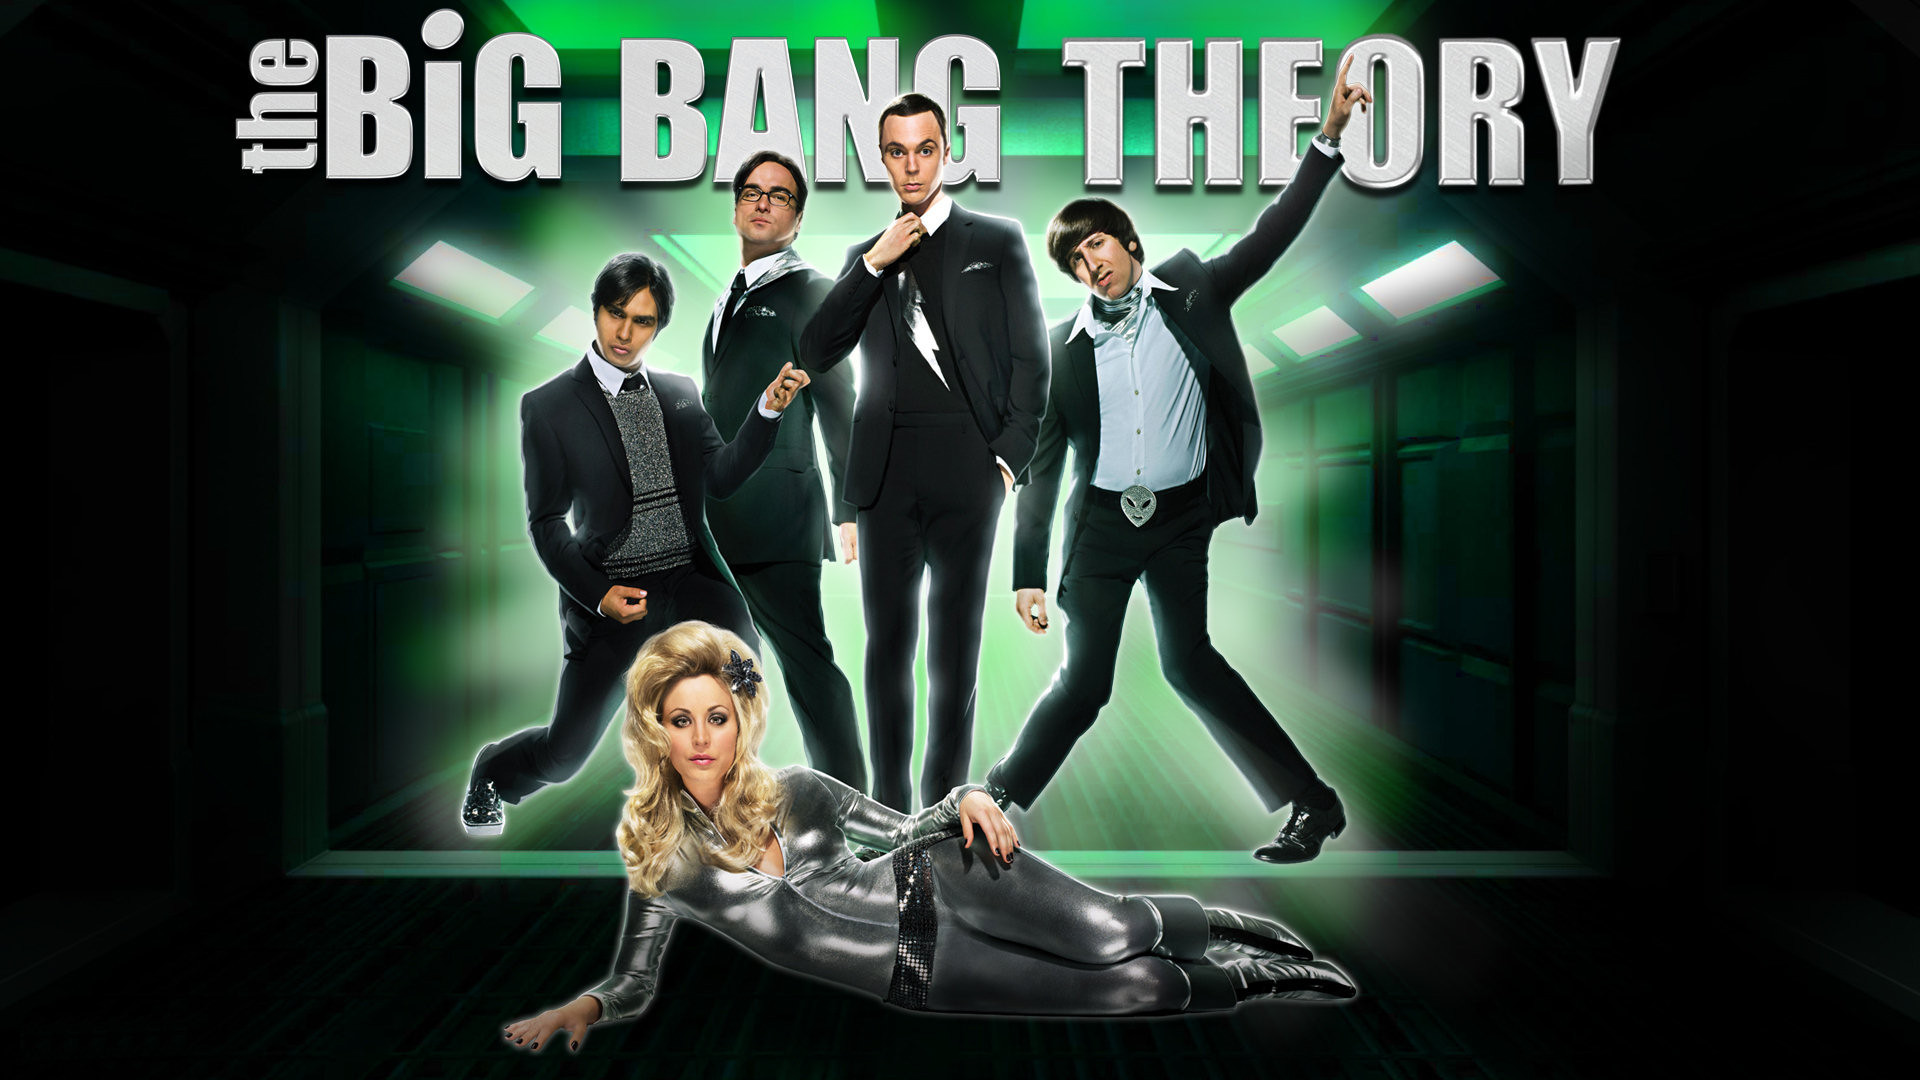 Big Bang Theory Wallpaper Hd